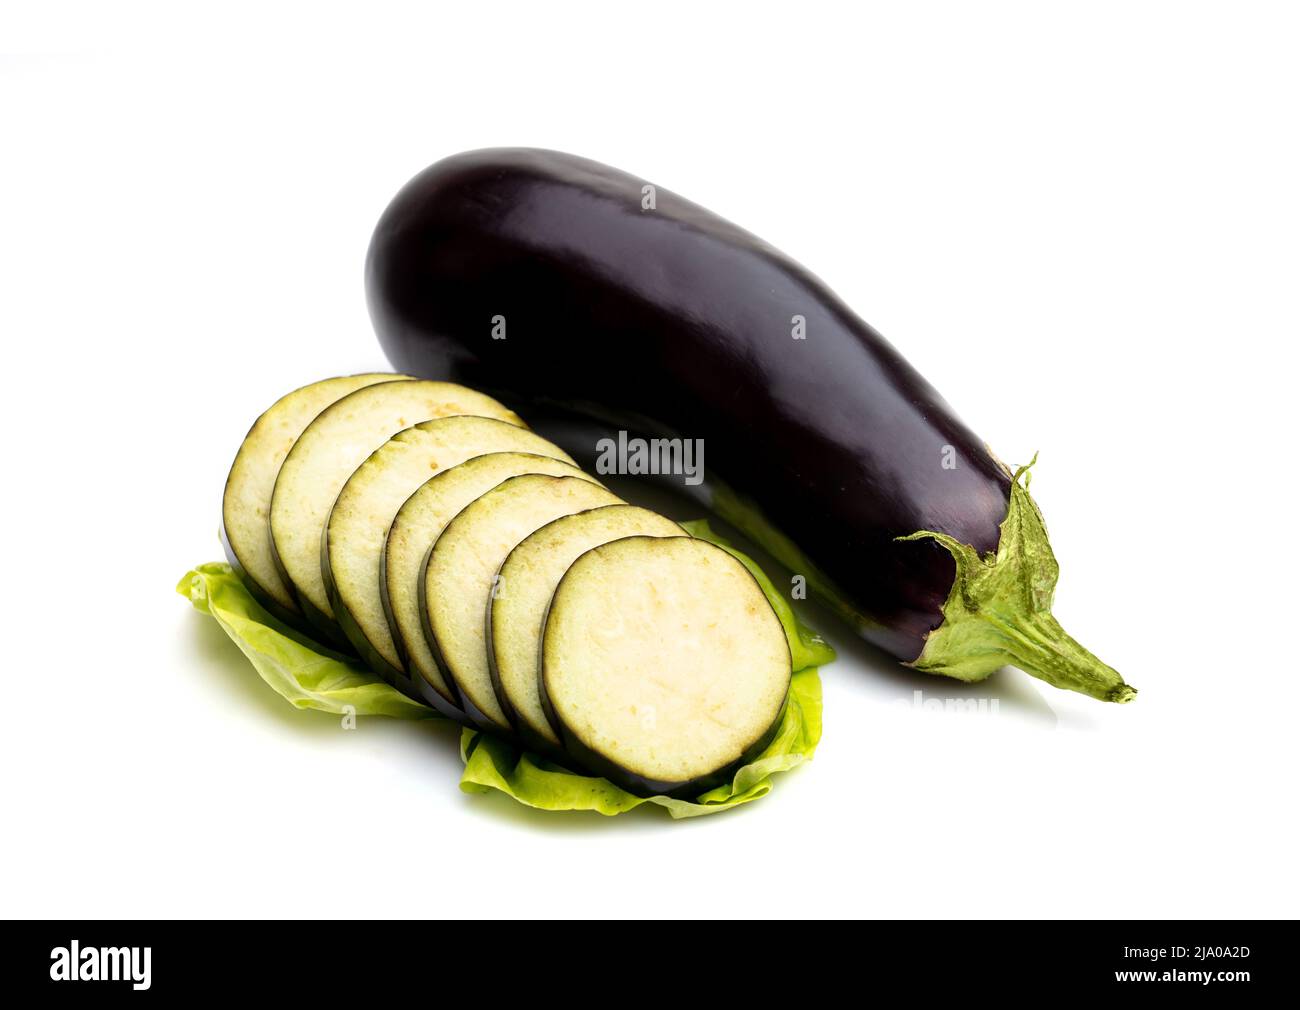 aubergine or eggplant isolated on white background Stock Photo